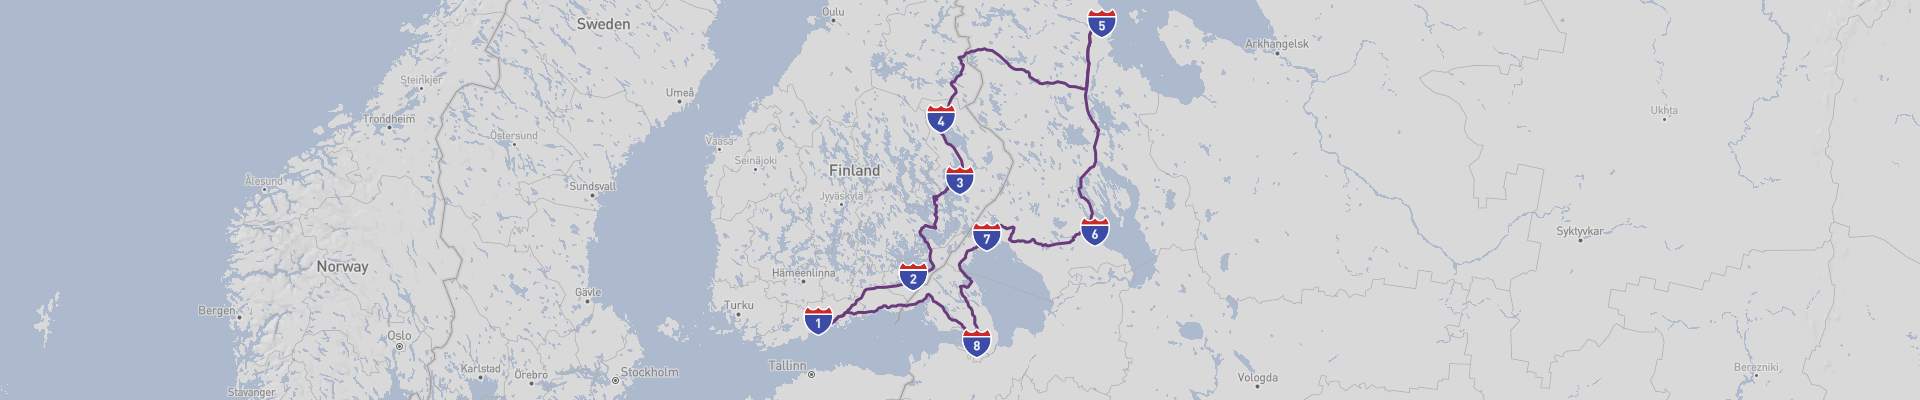 Karelia Road Trip